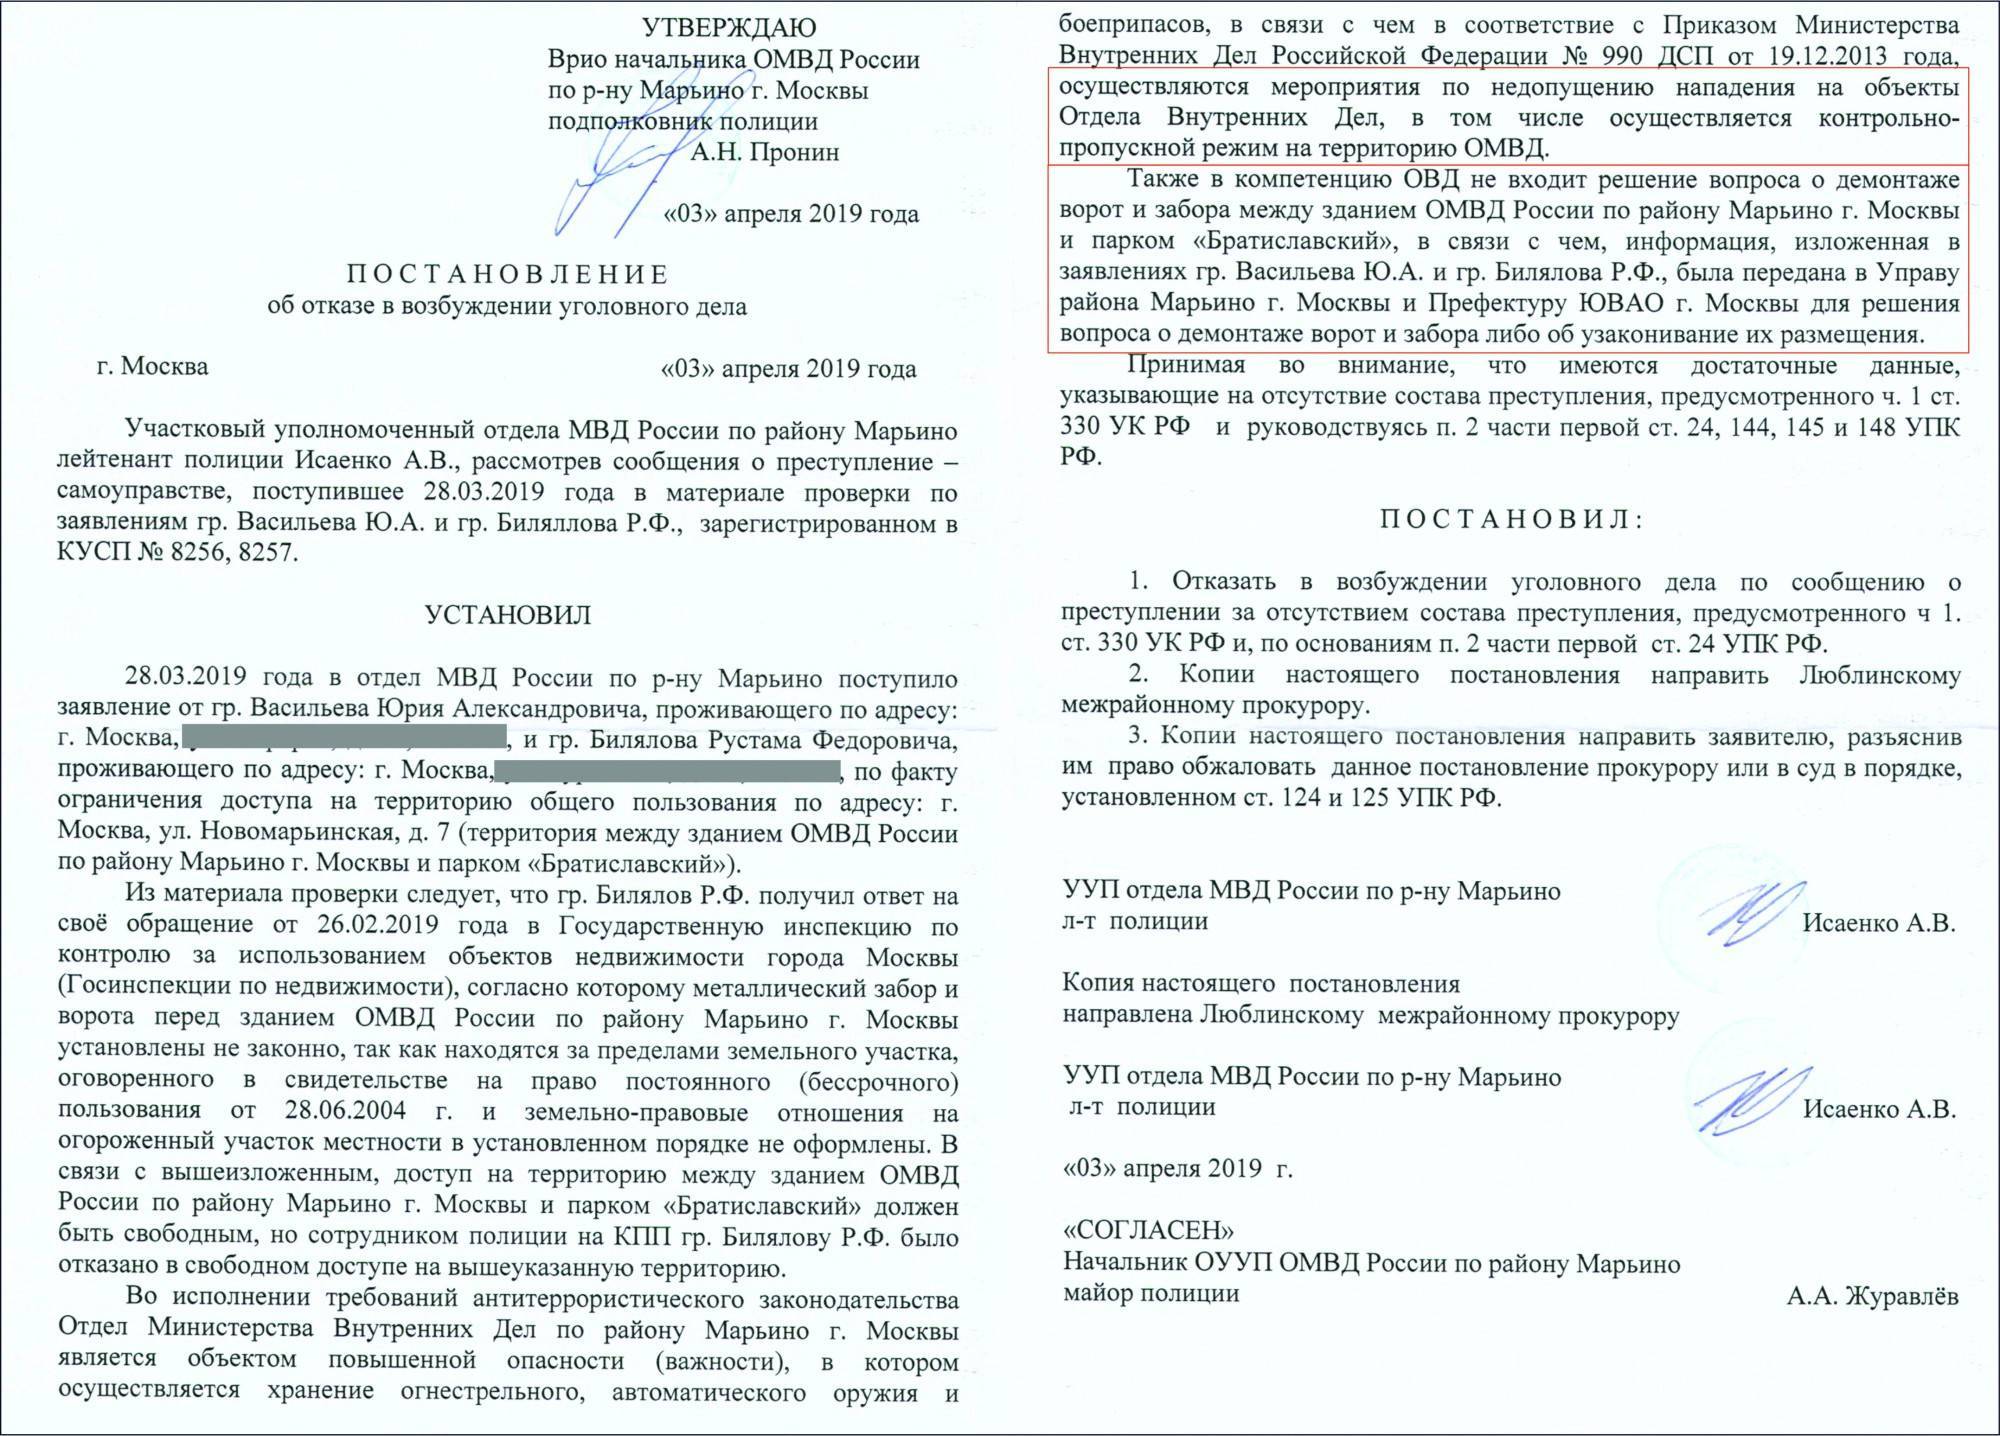 Постановление об отказе в возбуждении уголовного дела и его отмена: бланк, образец, пример уведомления | domosite.ru